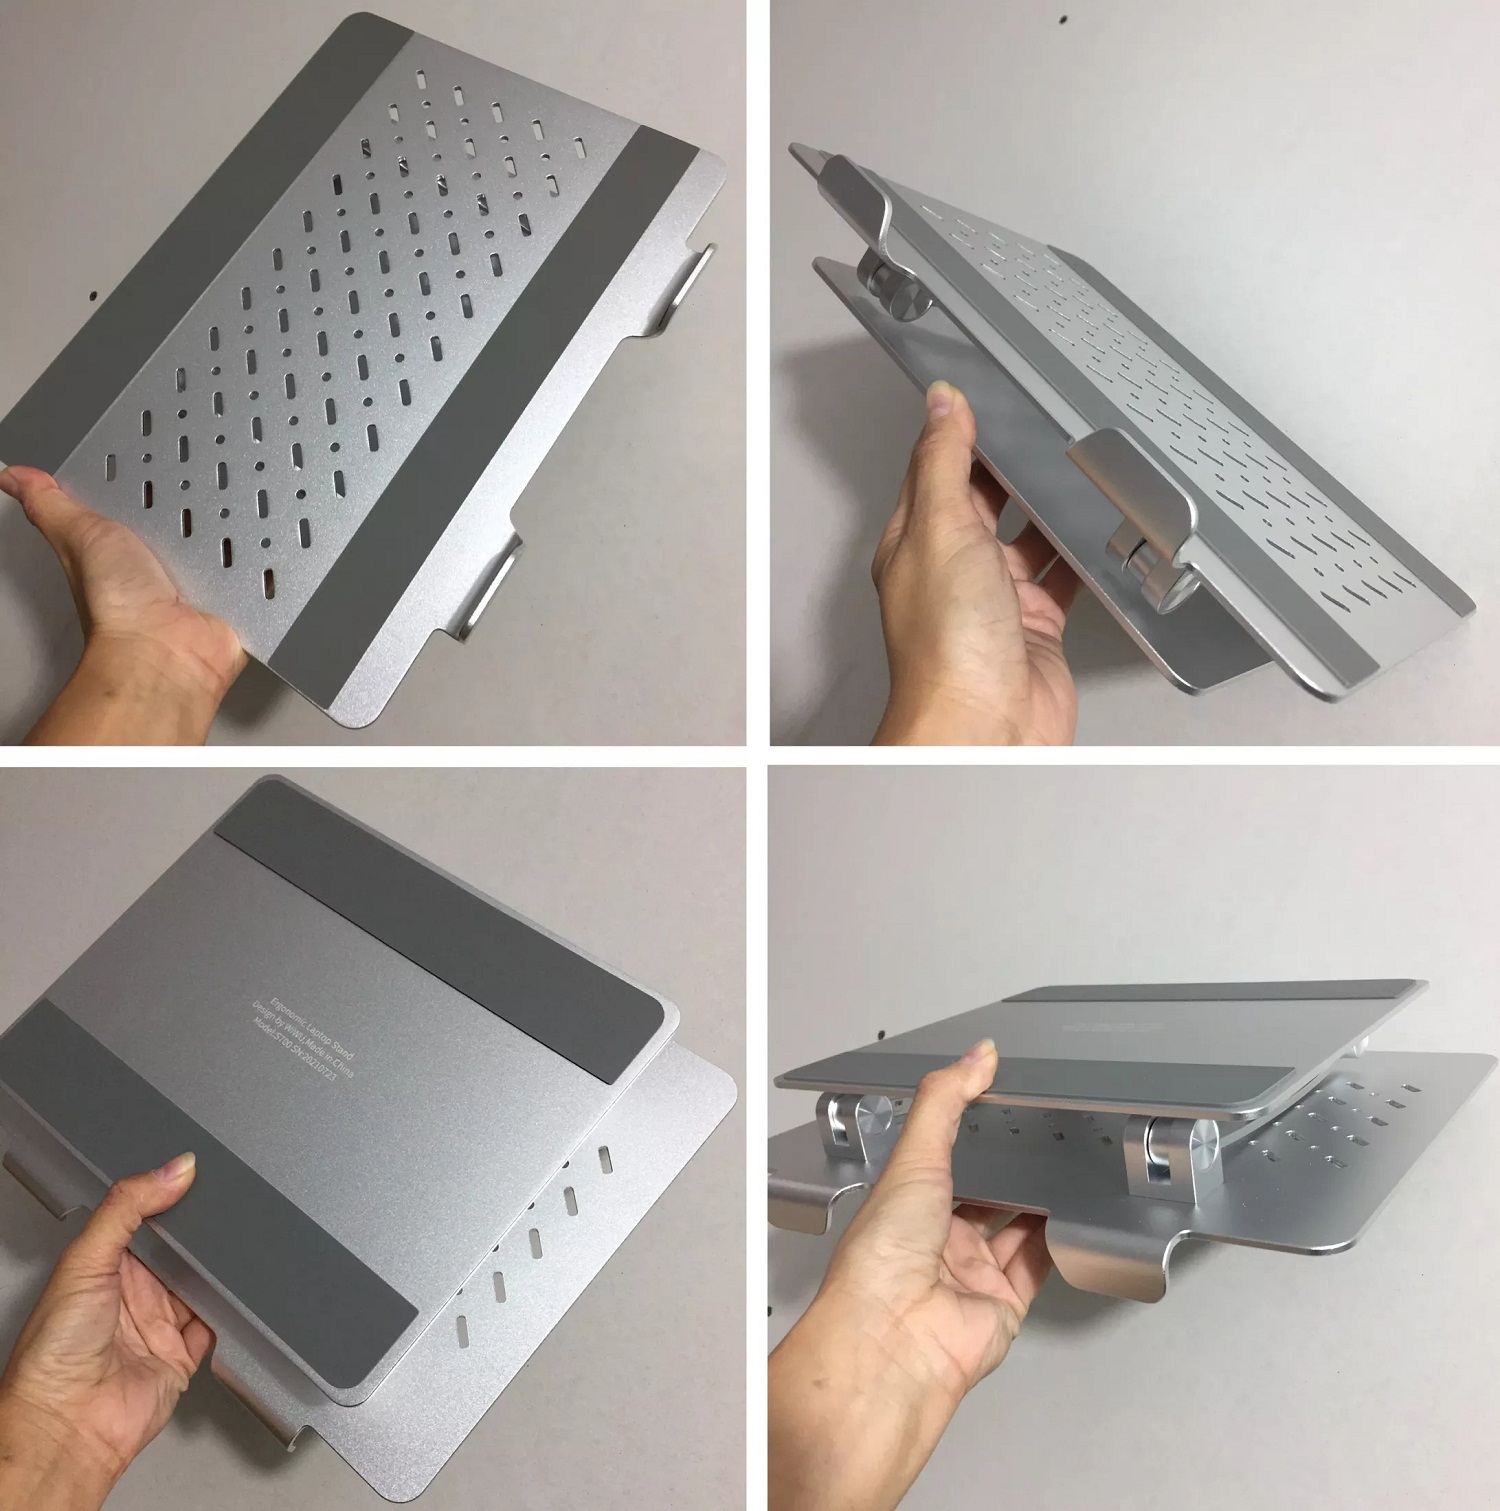 Giá đỡ tản nhiệt cho Macbook Laptop hiệu Wiwu S700 Adjustable Laptop Stand